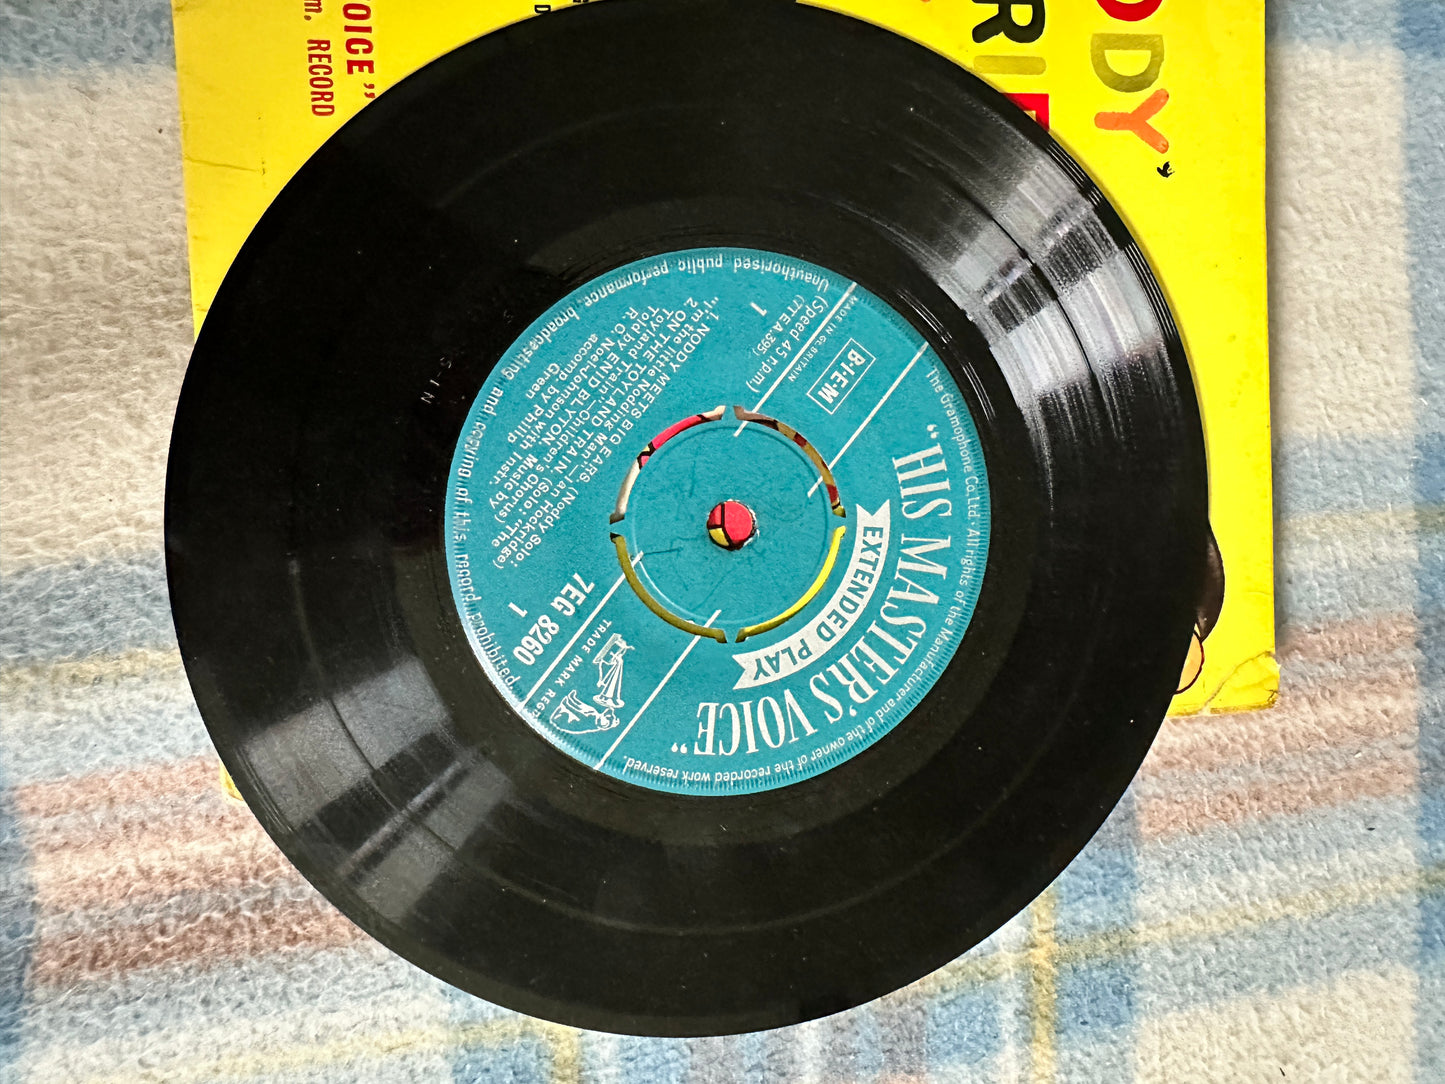 1959 Noddy Stories spoken by Enid Blyton on vinyl record